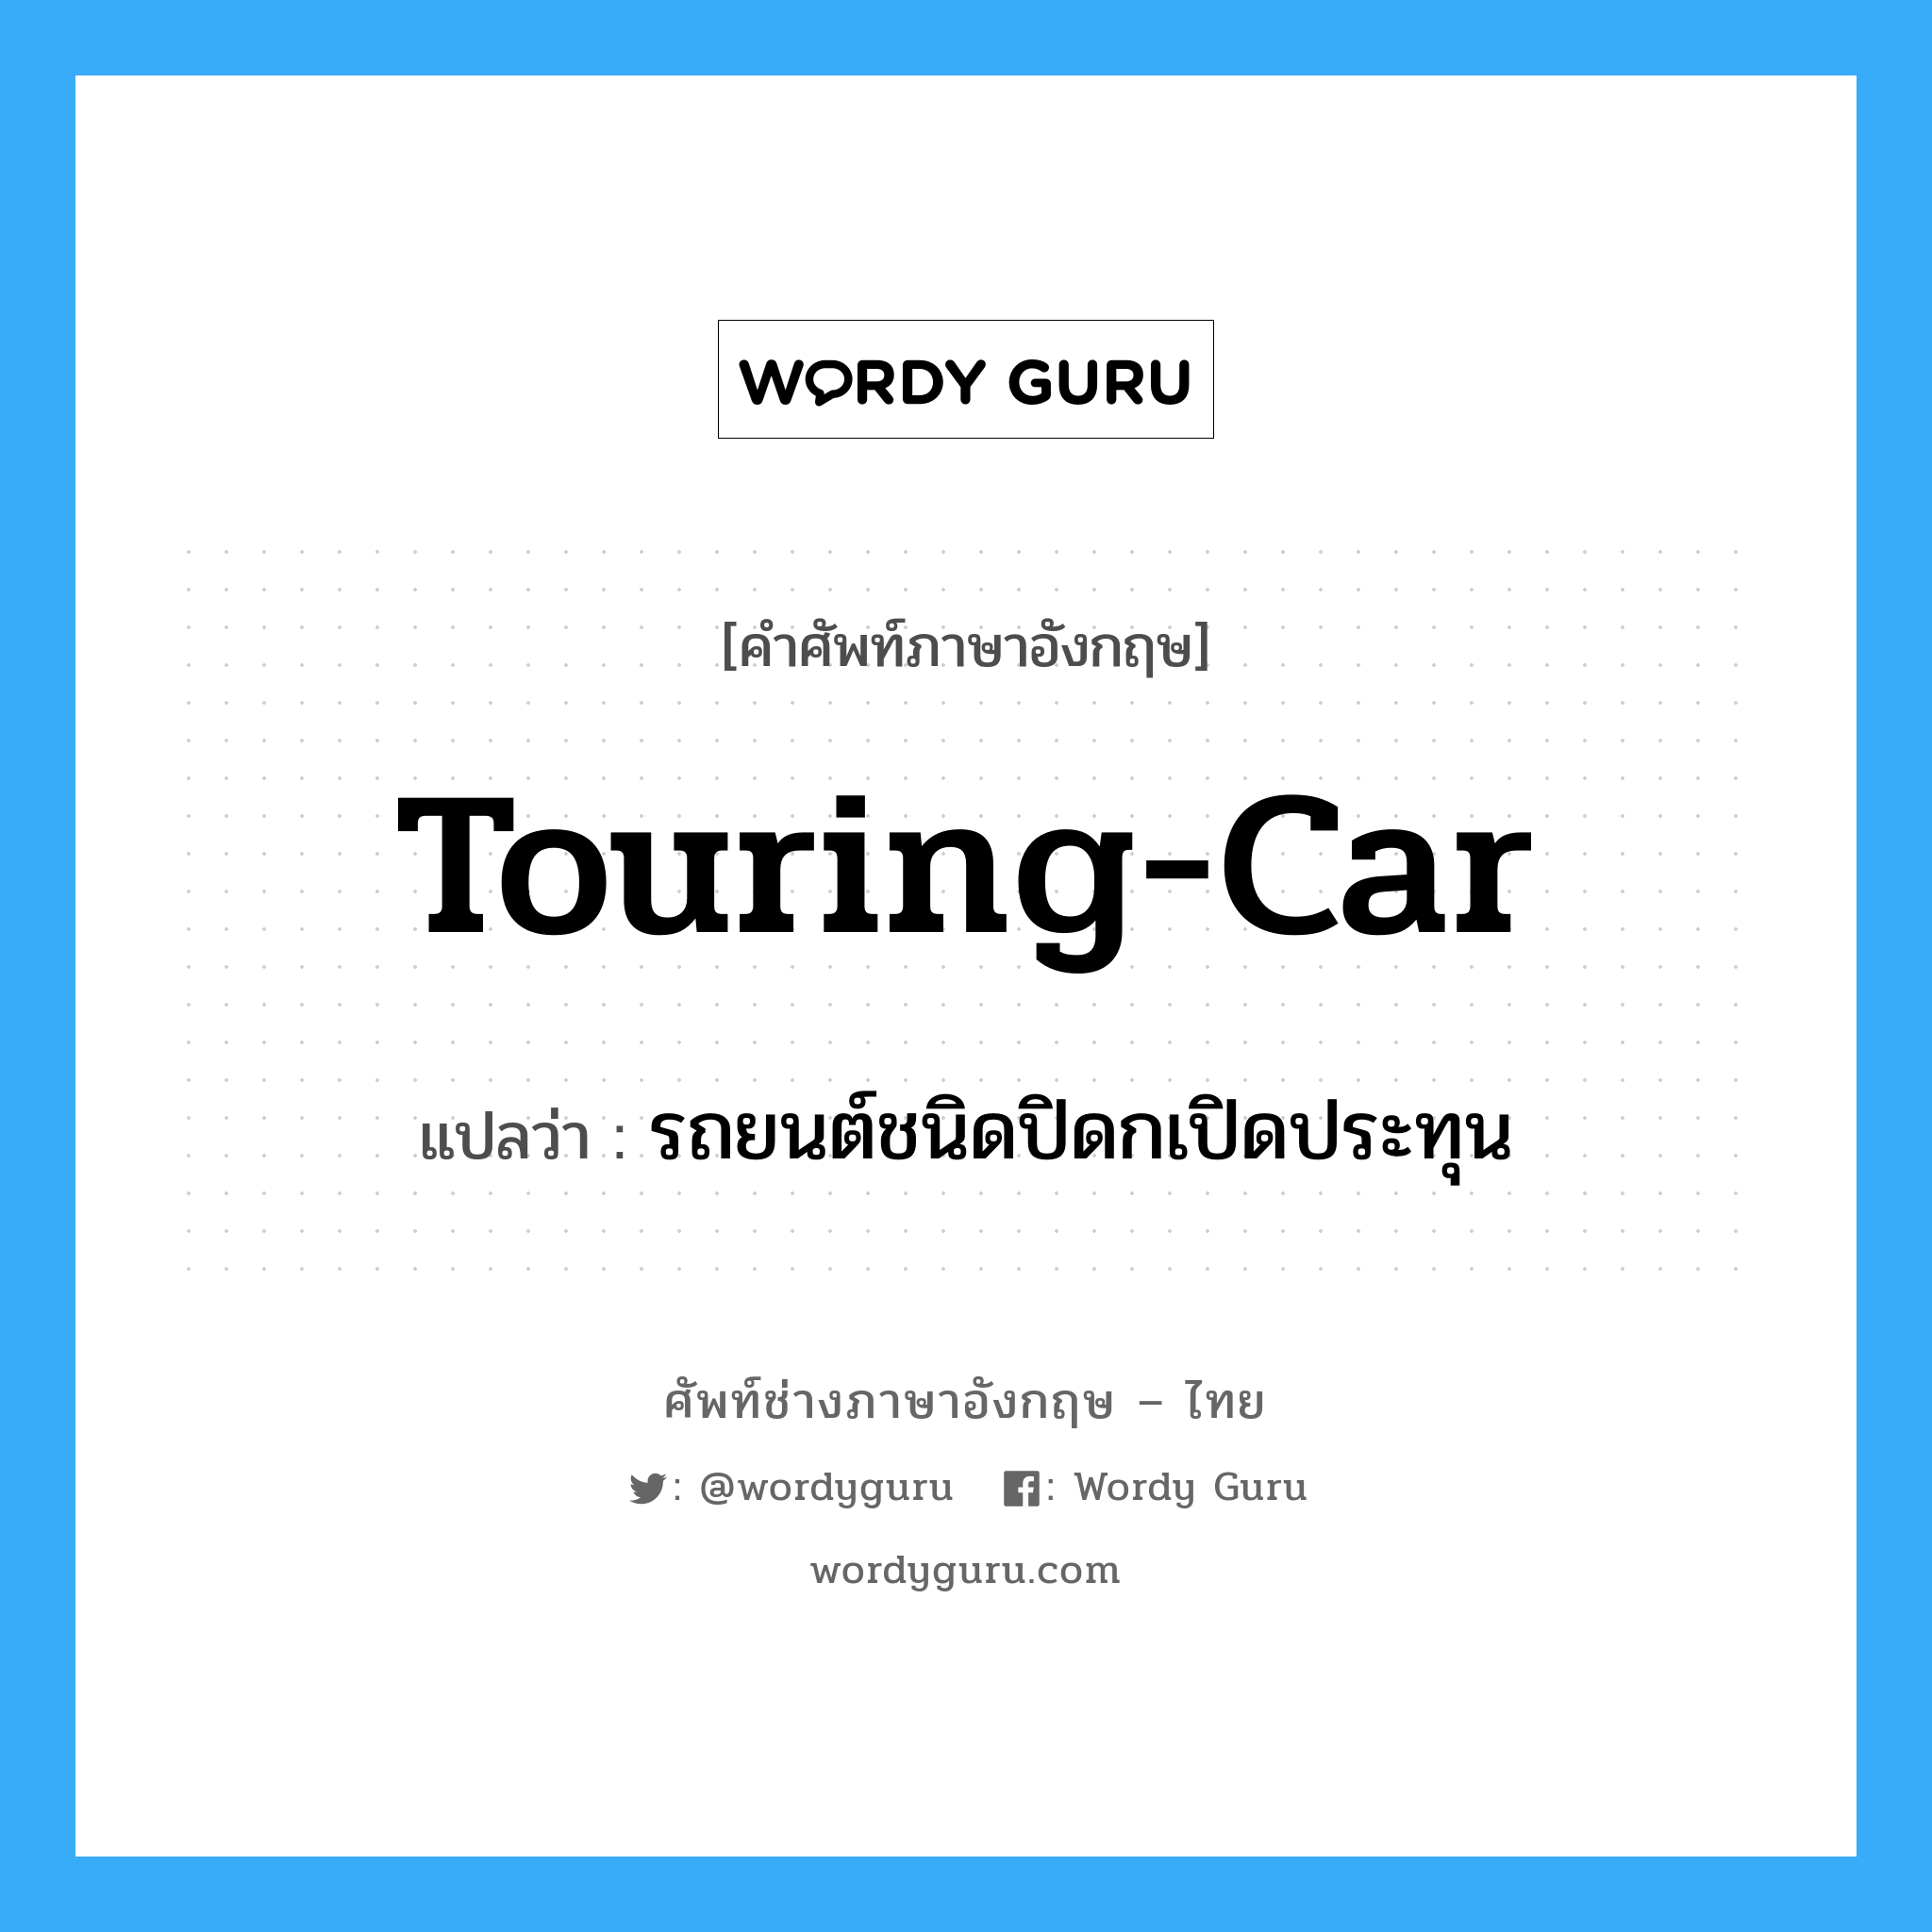 touring-car แปลว่า?, คำศัพท์ช่างภาษาอังกฤษ - ไทย touring-car คำศัพท์ภาษาอังกฤษ touring-car แปลว่า รถยนต์ชนิดปิดกเปิดประทุน